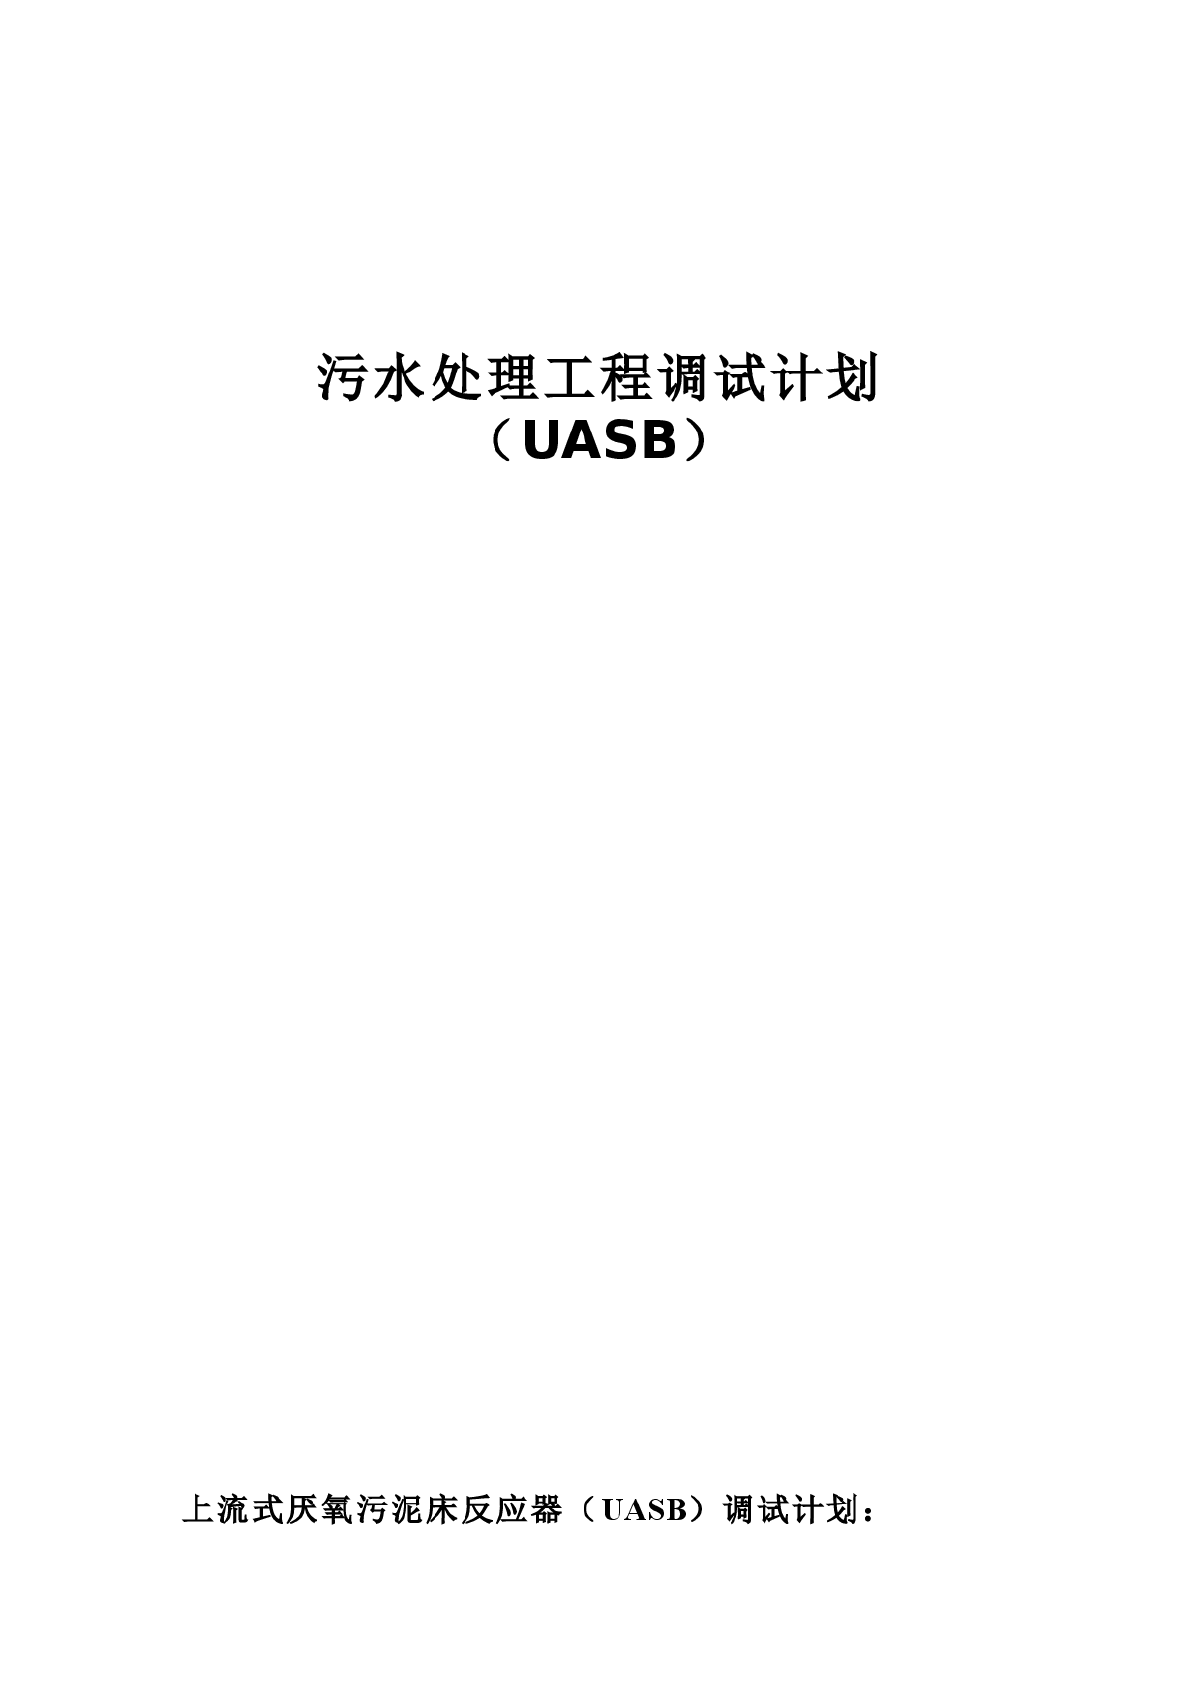 UASB调试计划-图一